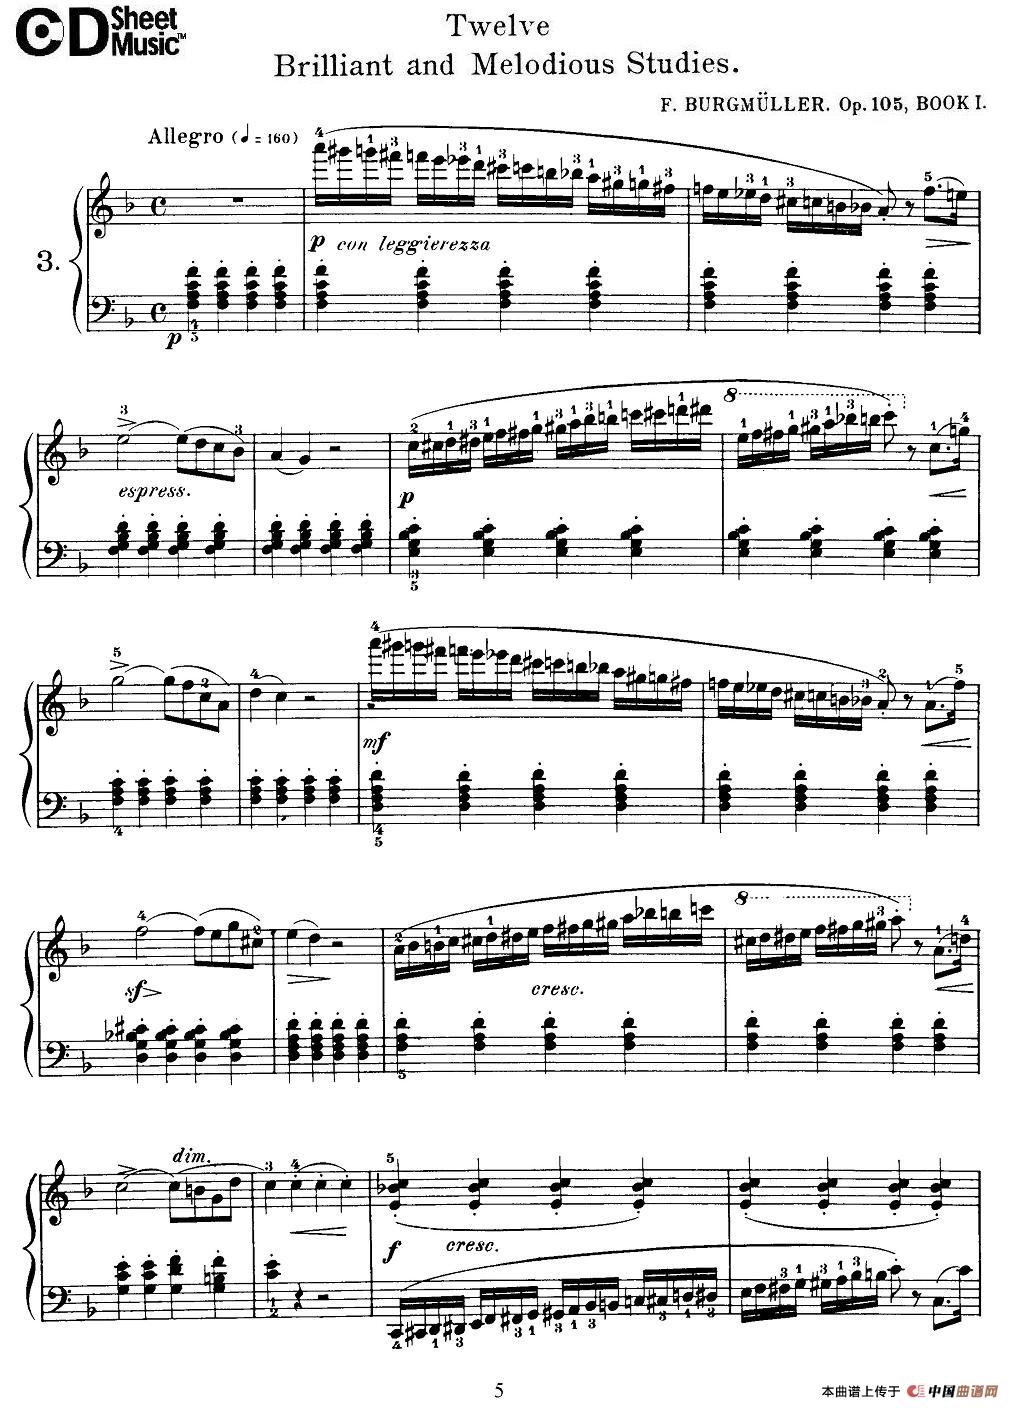 Burgmuller - 12 Brillian and Melodious Studies（3）钢琴谱